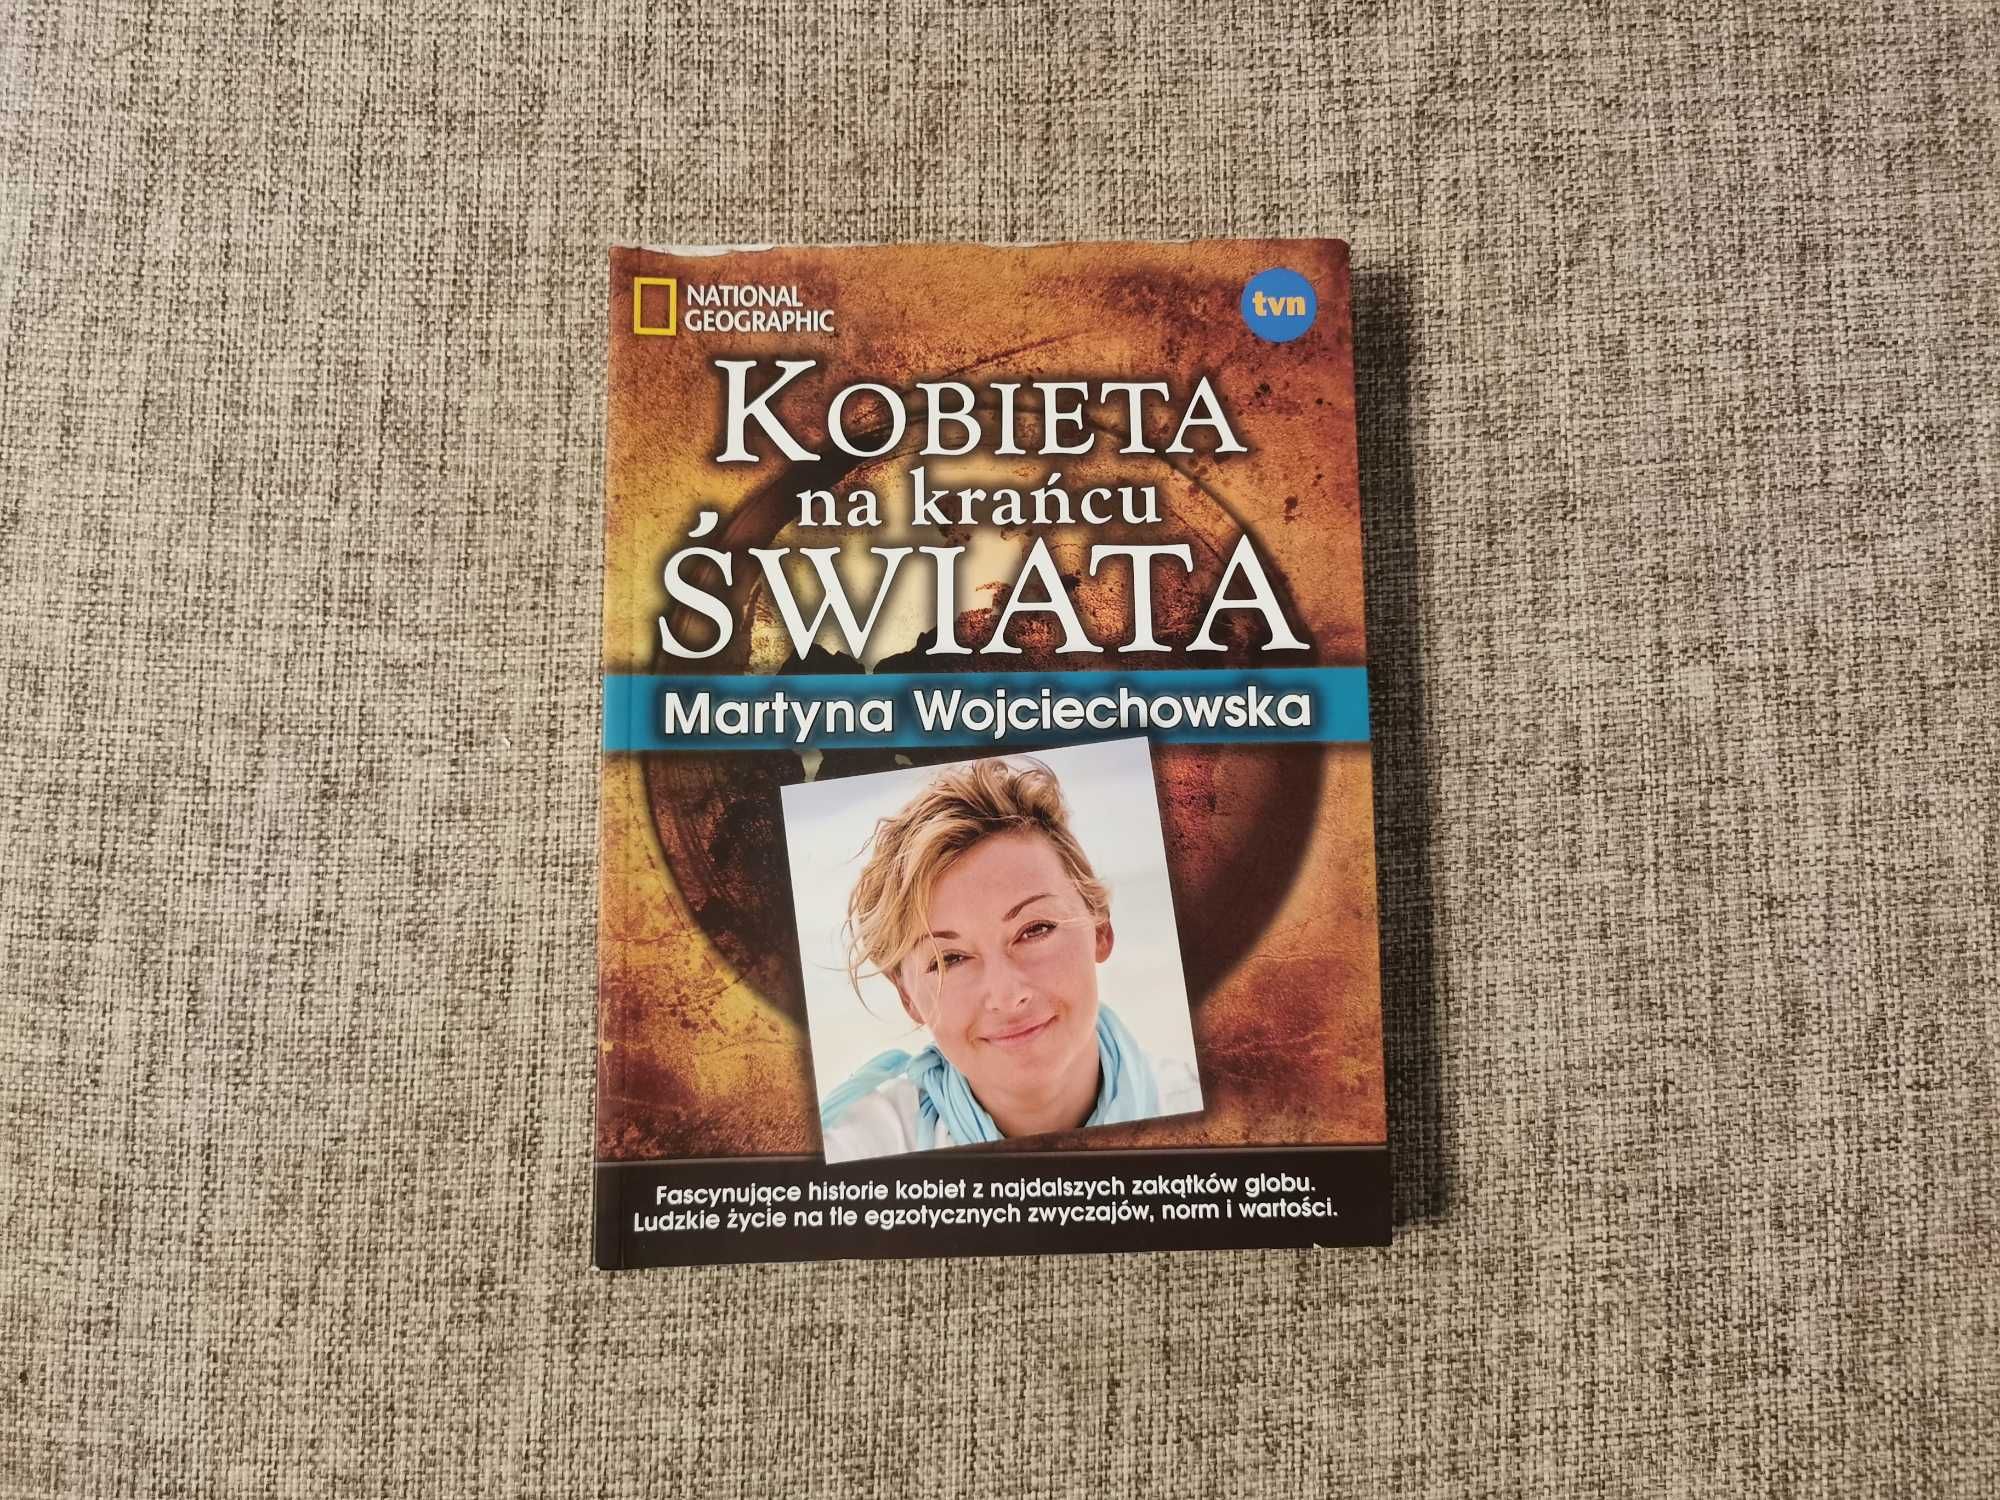 Kobieta na krańcu Świata - Martyna Wojciechowska National Geographic